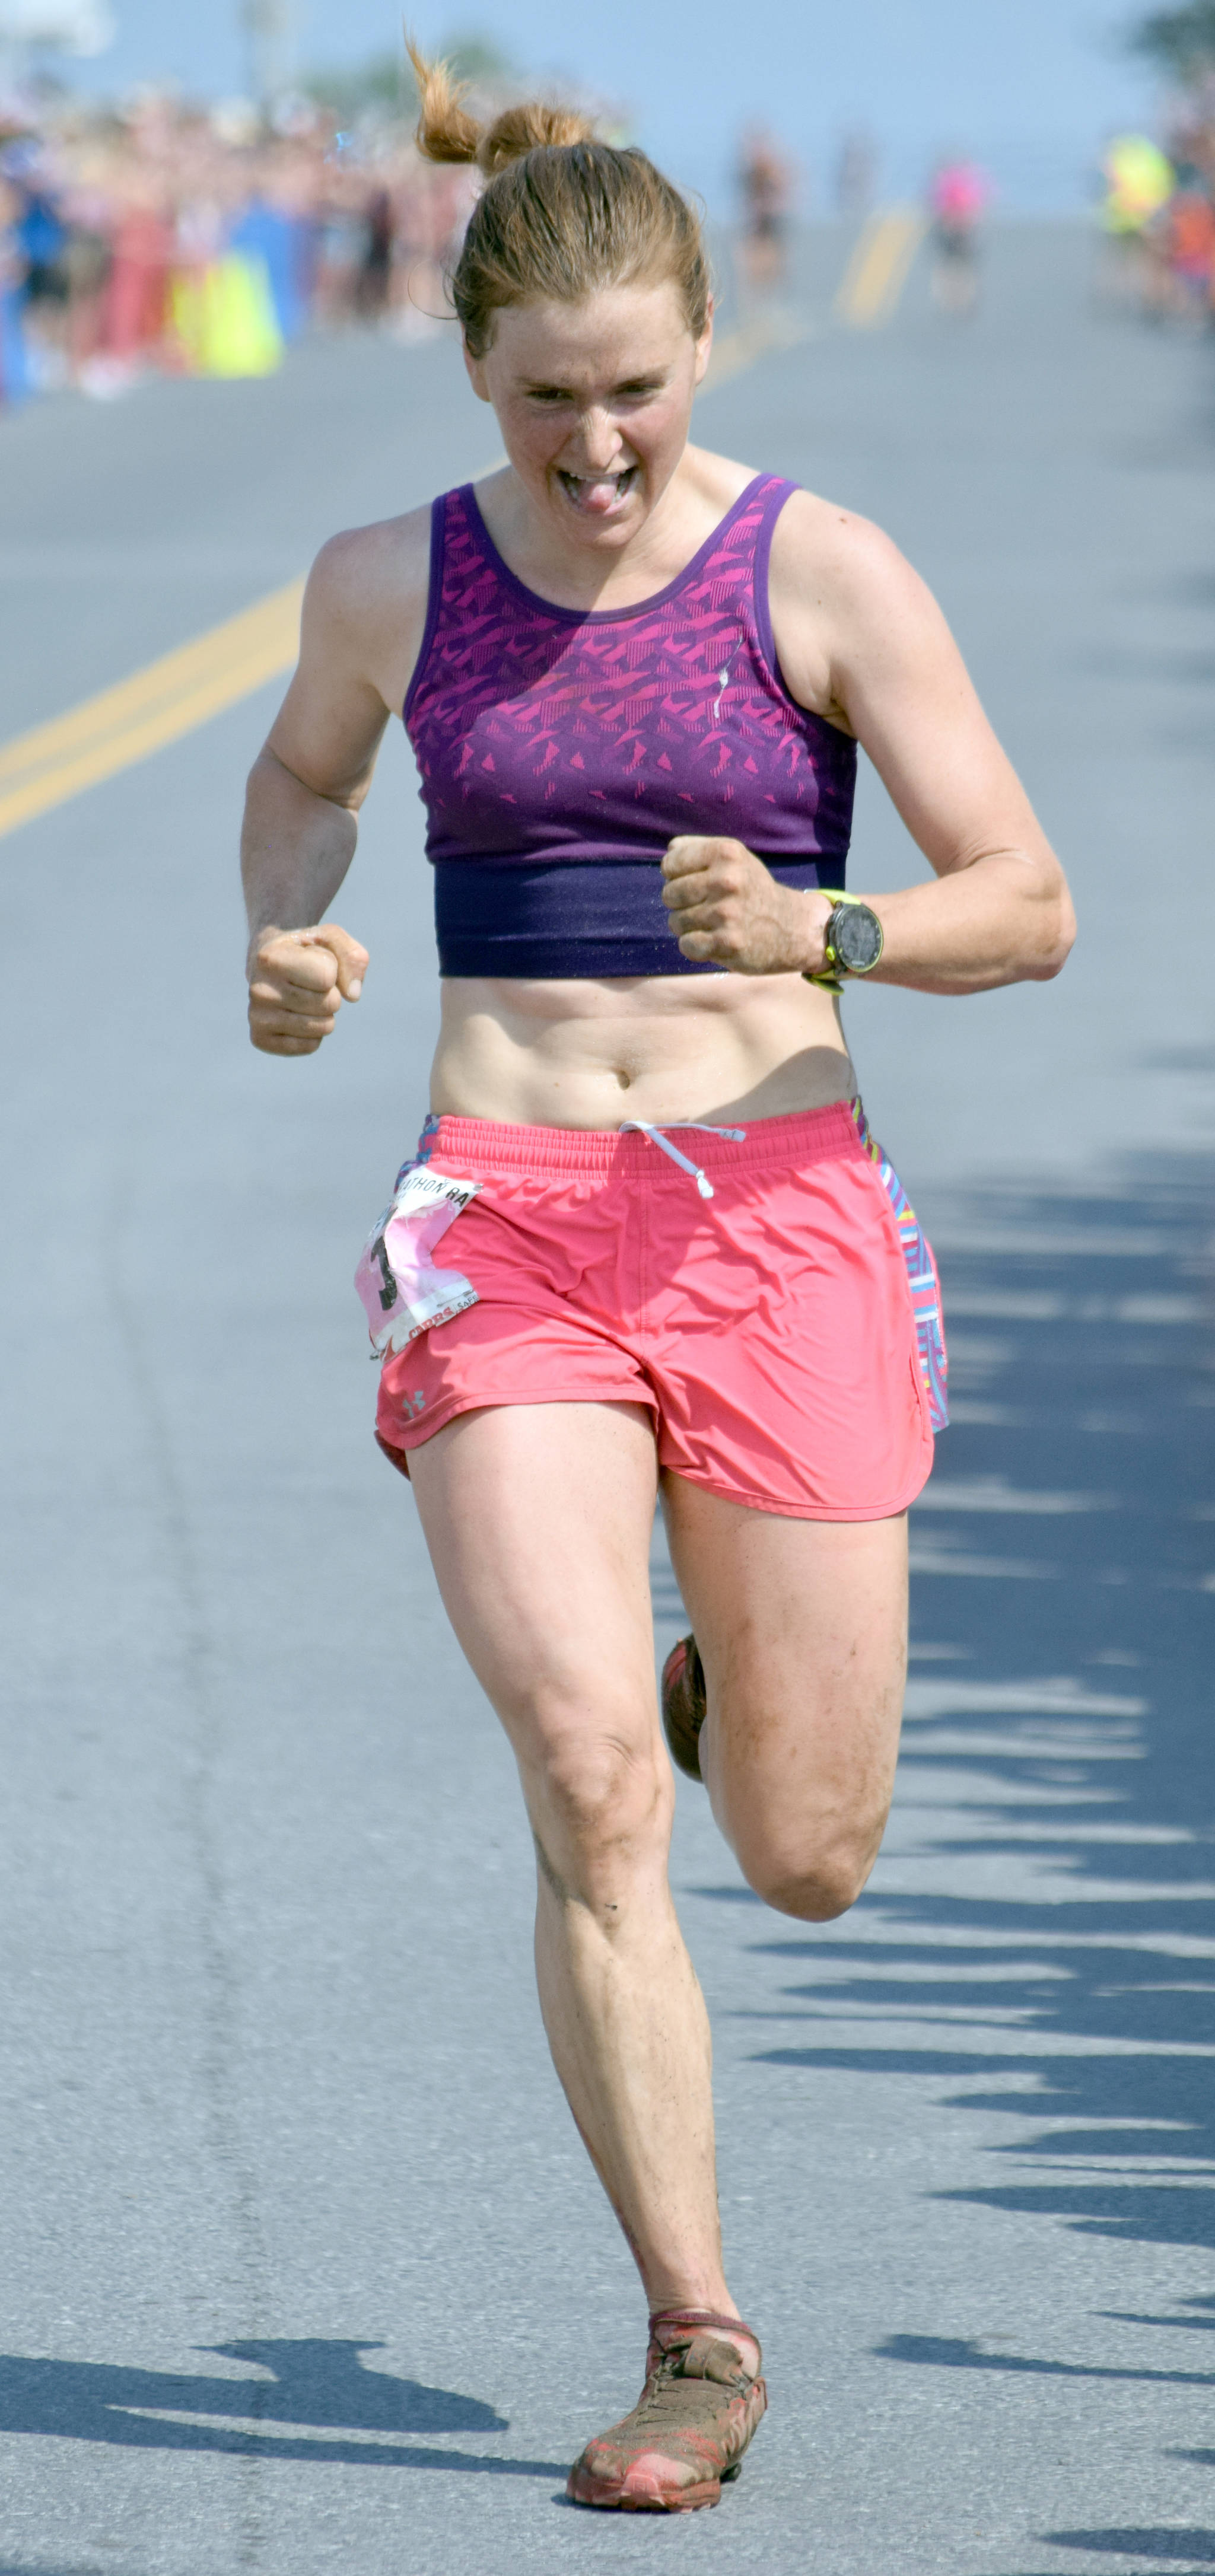 Seward’s Hannah Lafleur runs to victory July 4 in the women’s Mount Marathon Race in Seward. (Photo by Jeff Helminiak/Peninsula Clarion)